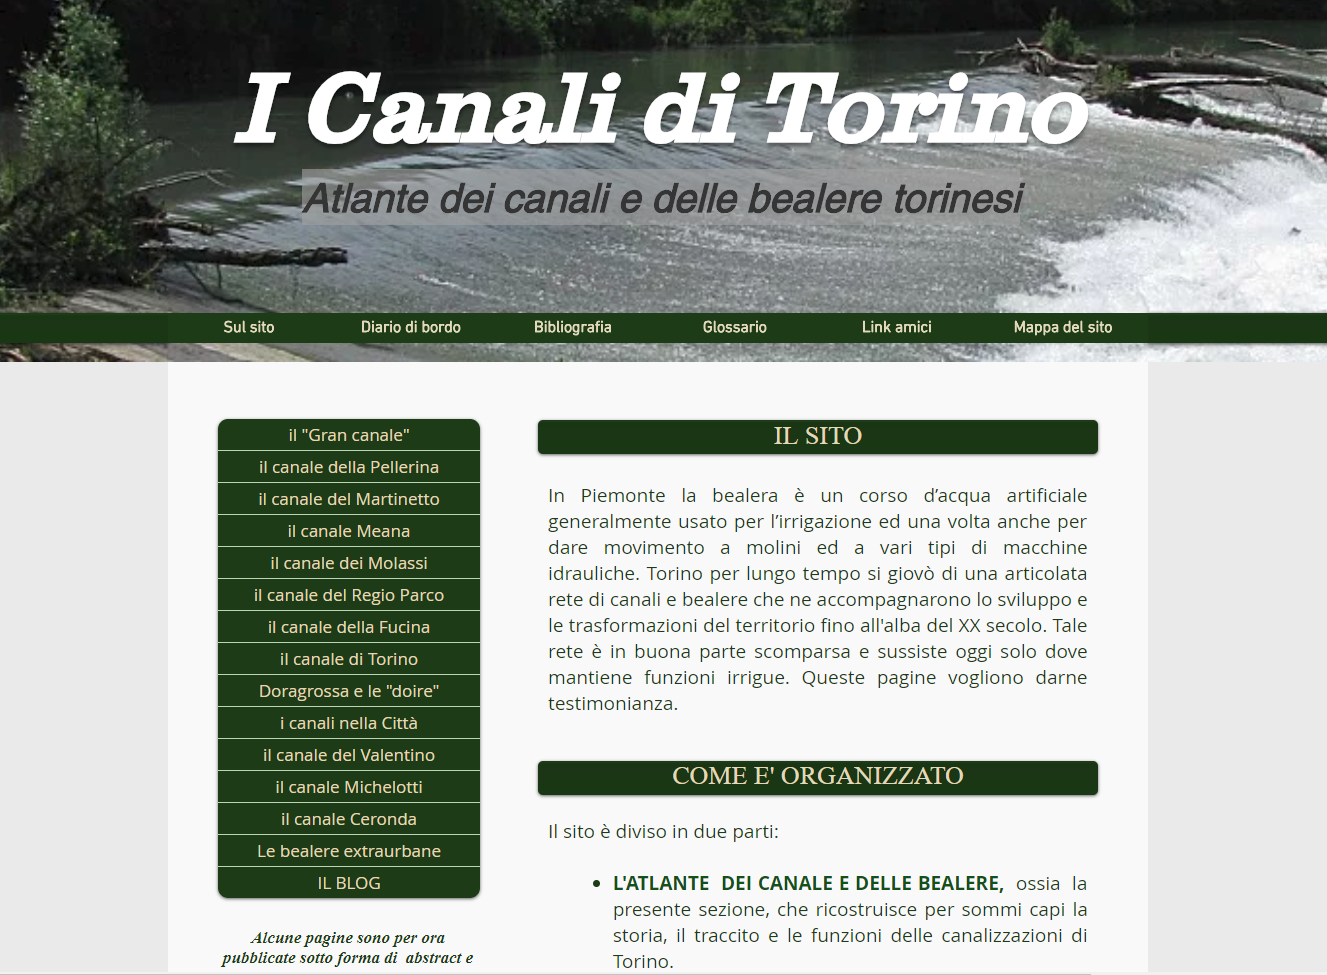 I canali di Torino